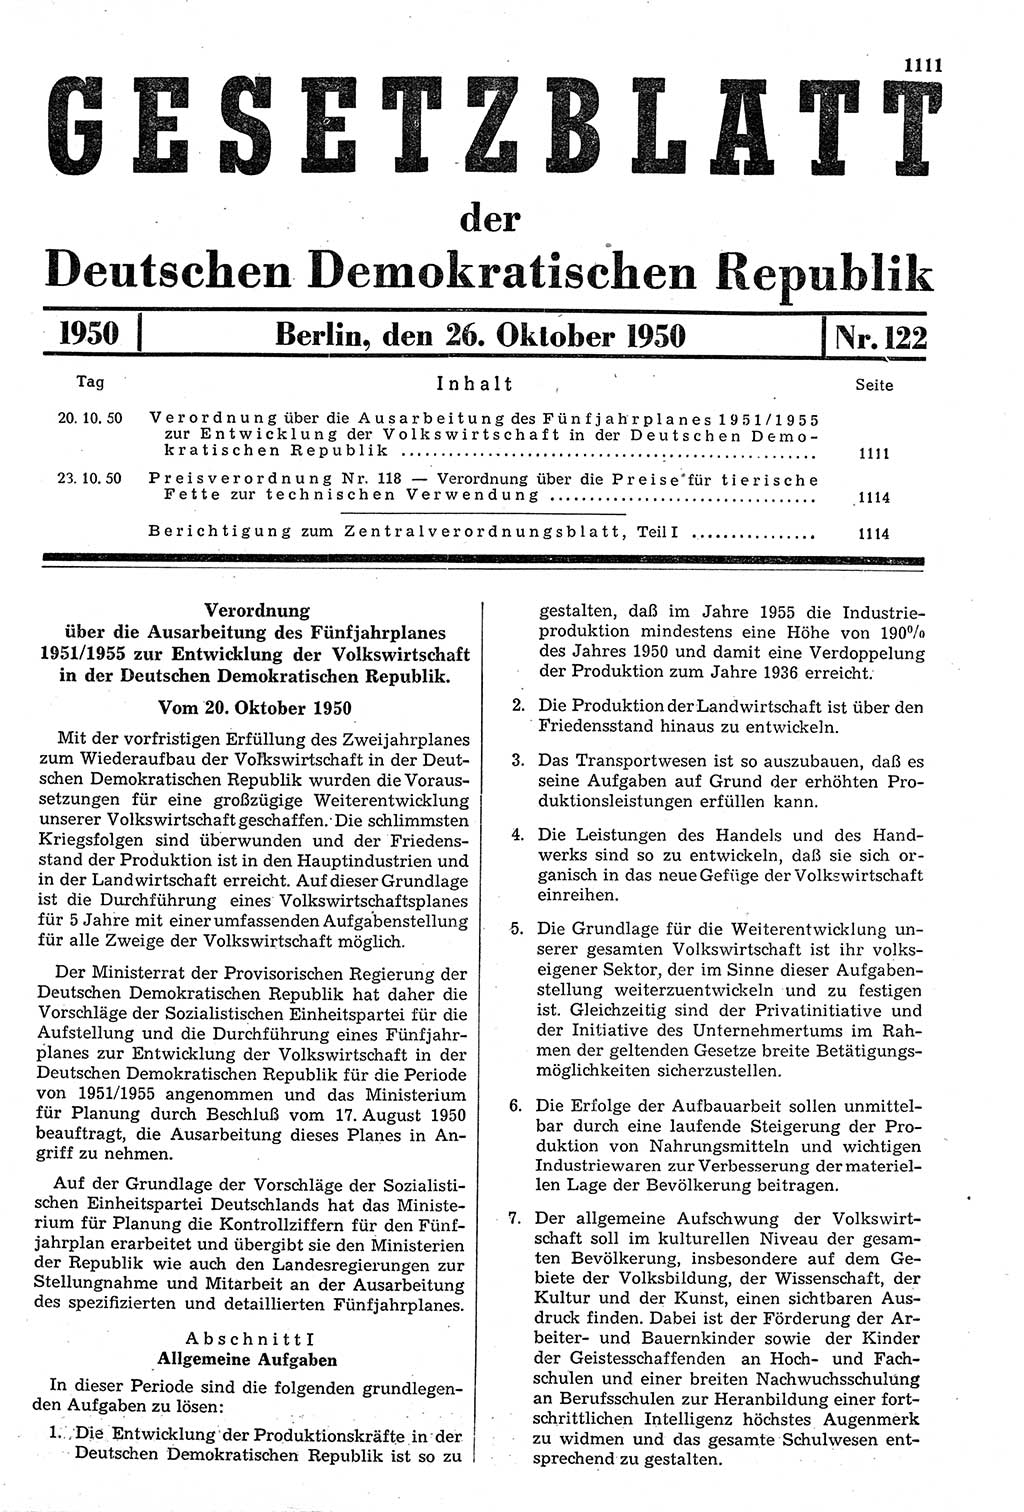 Gesetzblatt (GBl.) der Deutschen Demokratischen Republik (DDR) 1950, Seite 1111 (GBl. DDR 1950, S. 1111)